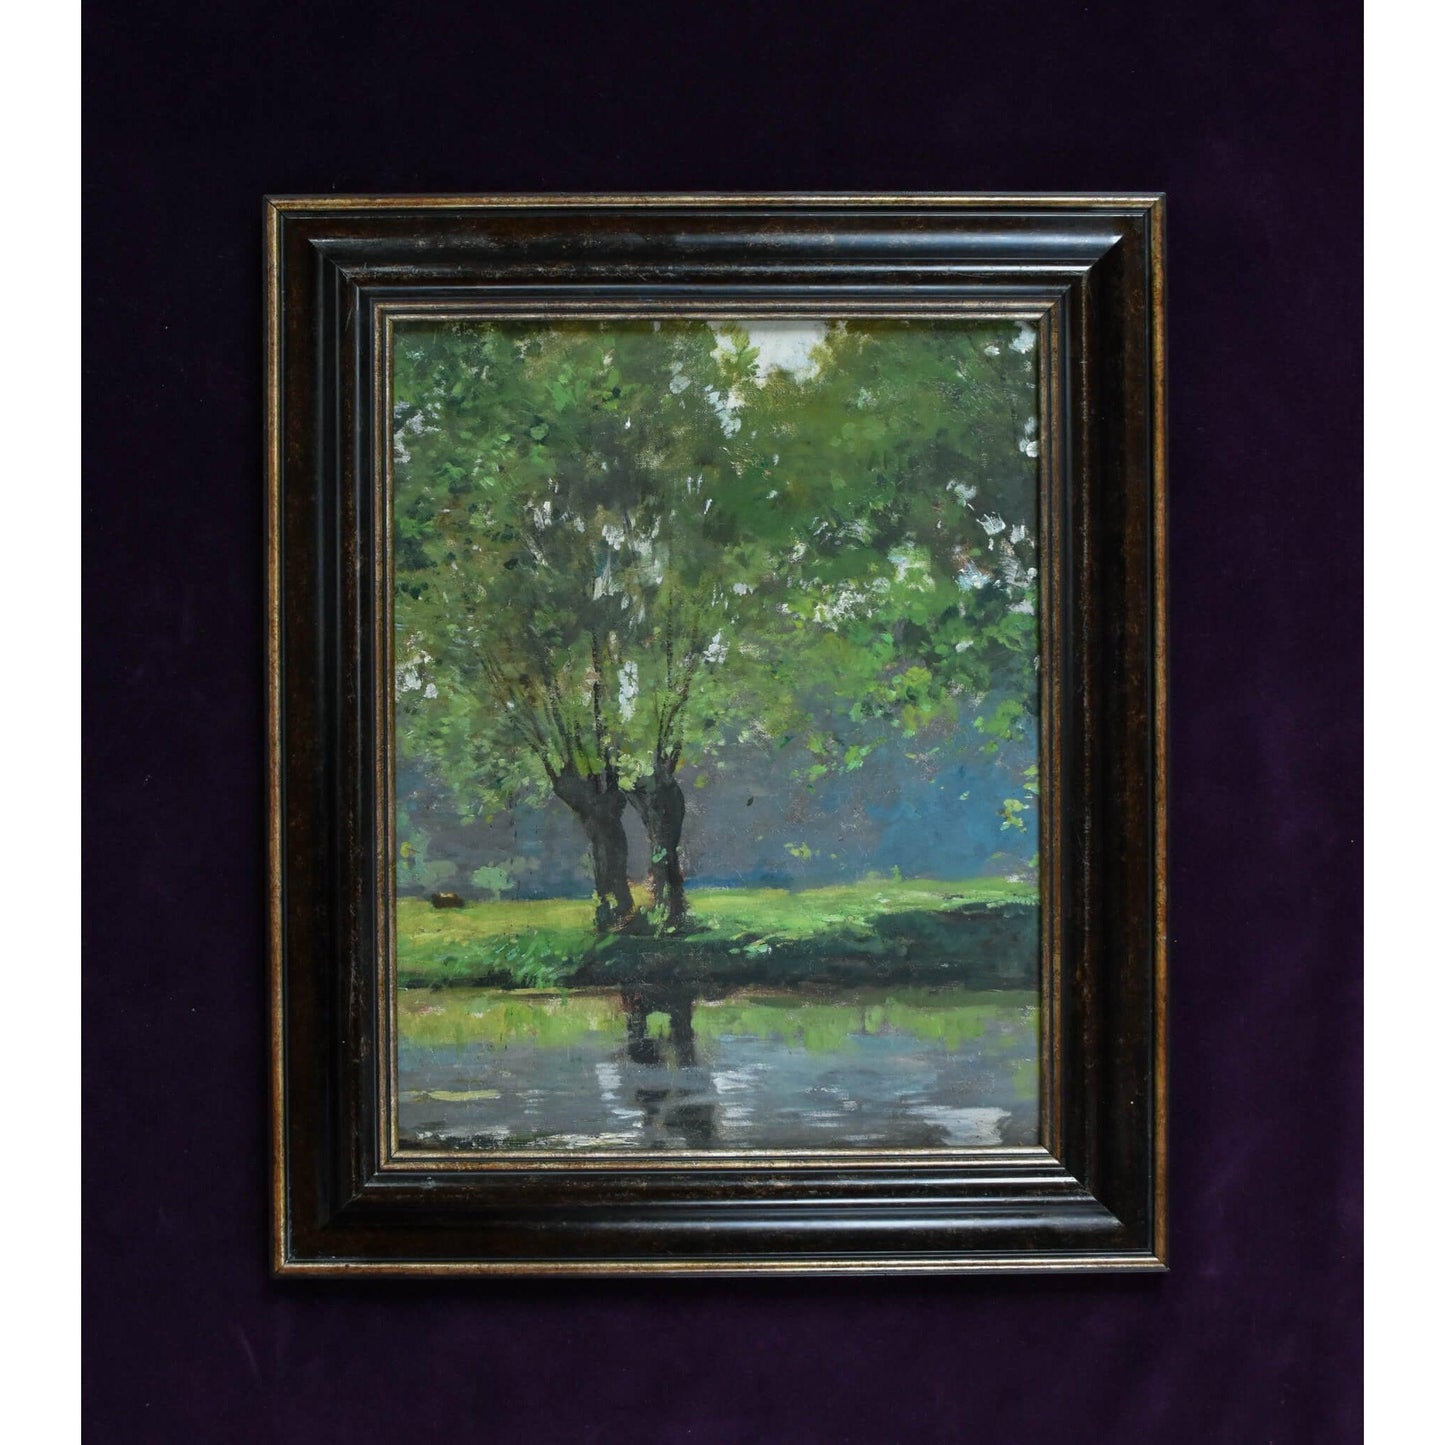 Antique landscape oil painting river impressionist art circa 1900 by Pierre-Paul Detenre for sale at Winckelmann Gallery